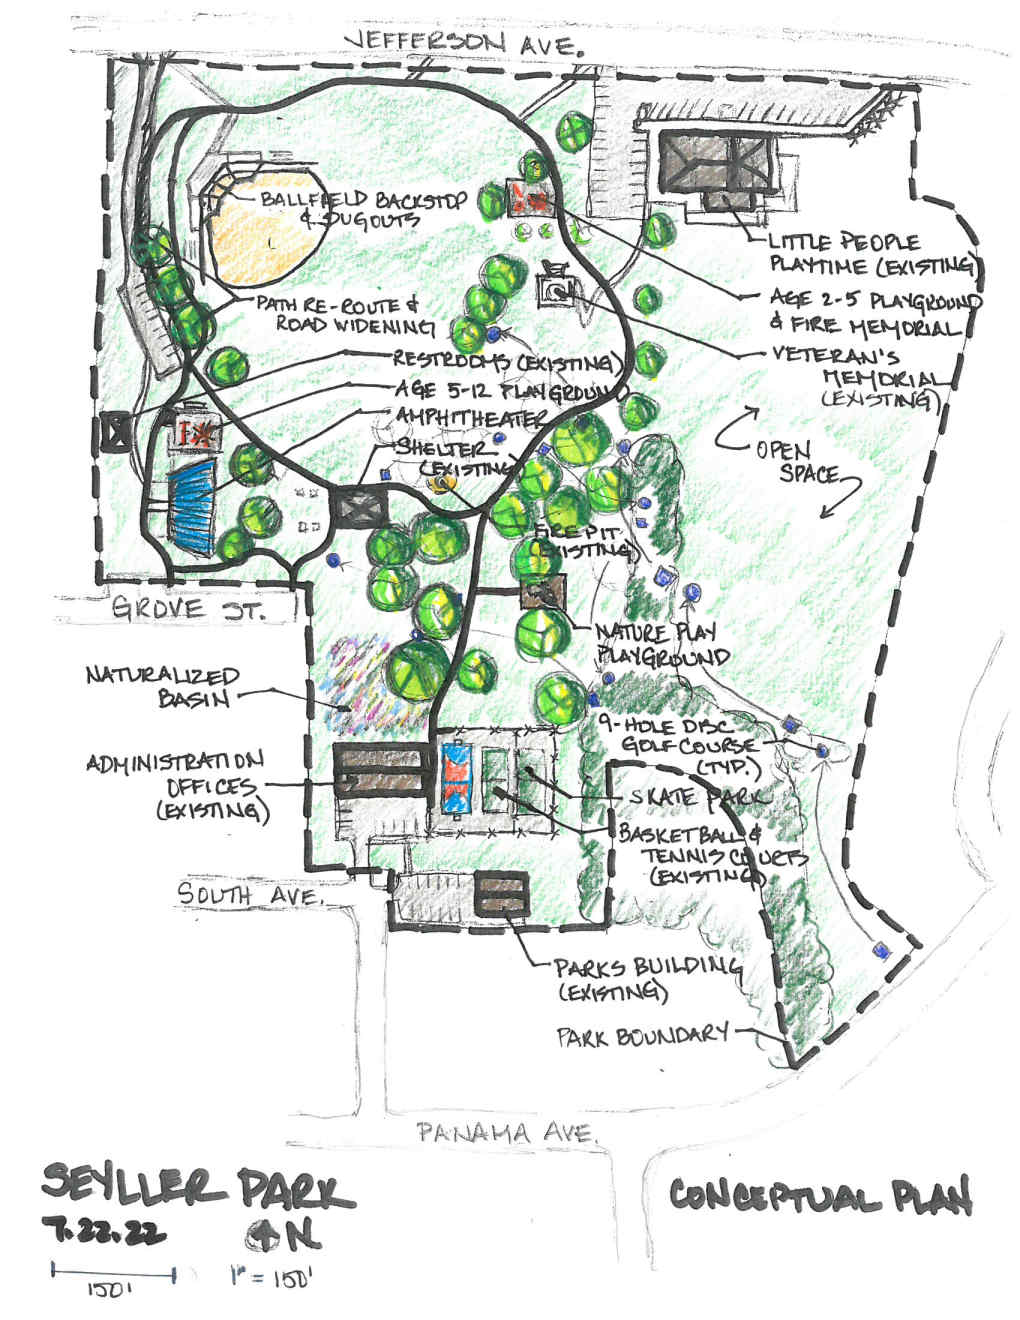 Seyller Park Plan